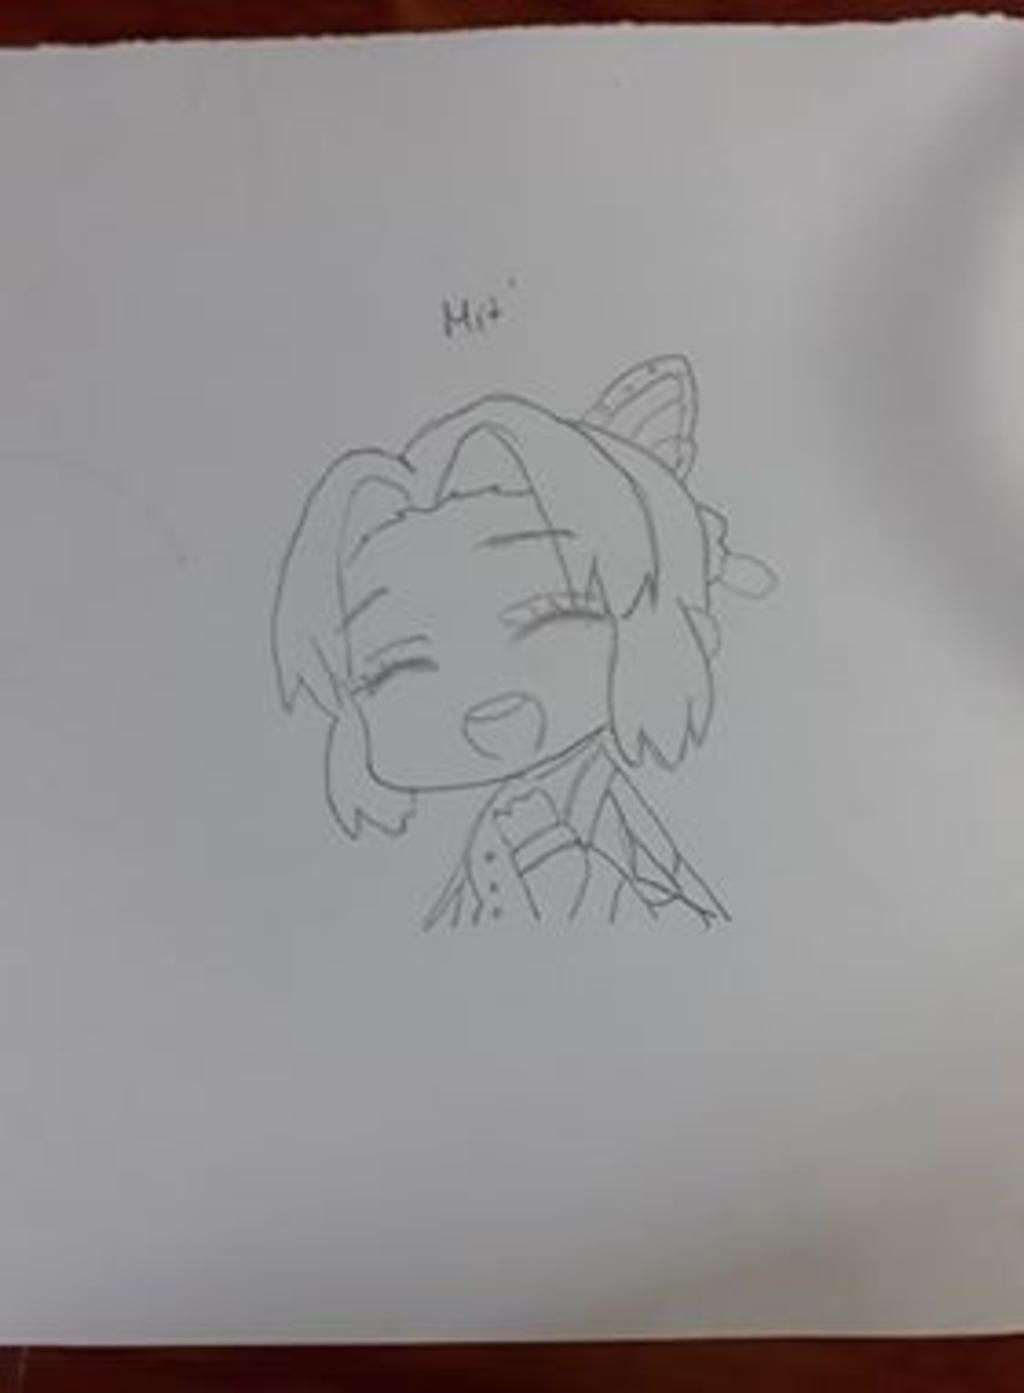 How to Draw SHINOBU KOCHO  Drawing Simple Anime 315  Cong Dan Art   YouTube